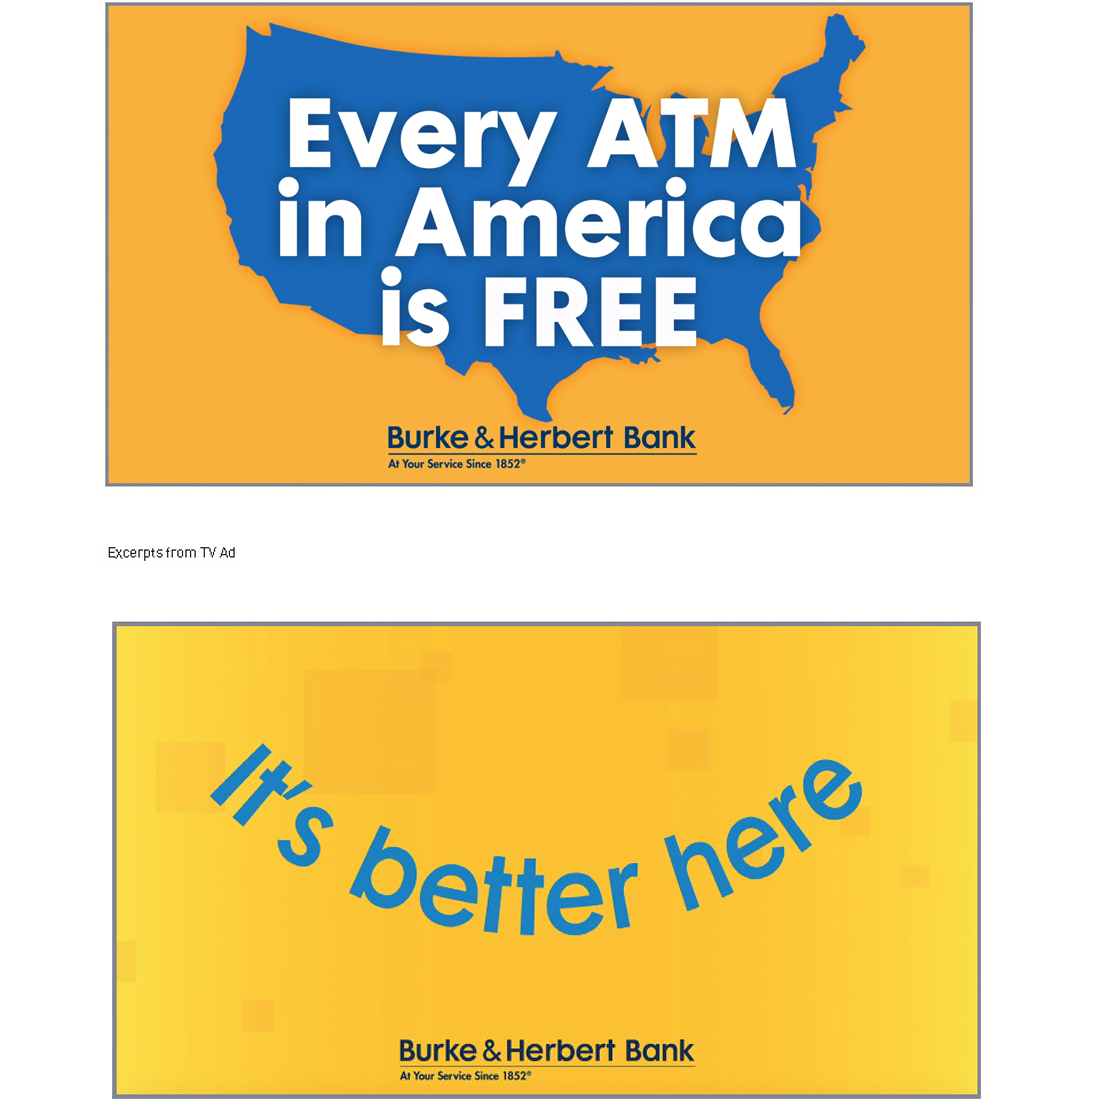 Burke & Herbert Bank "That's Better" Advertising sample